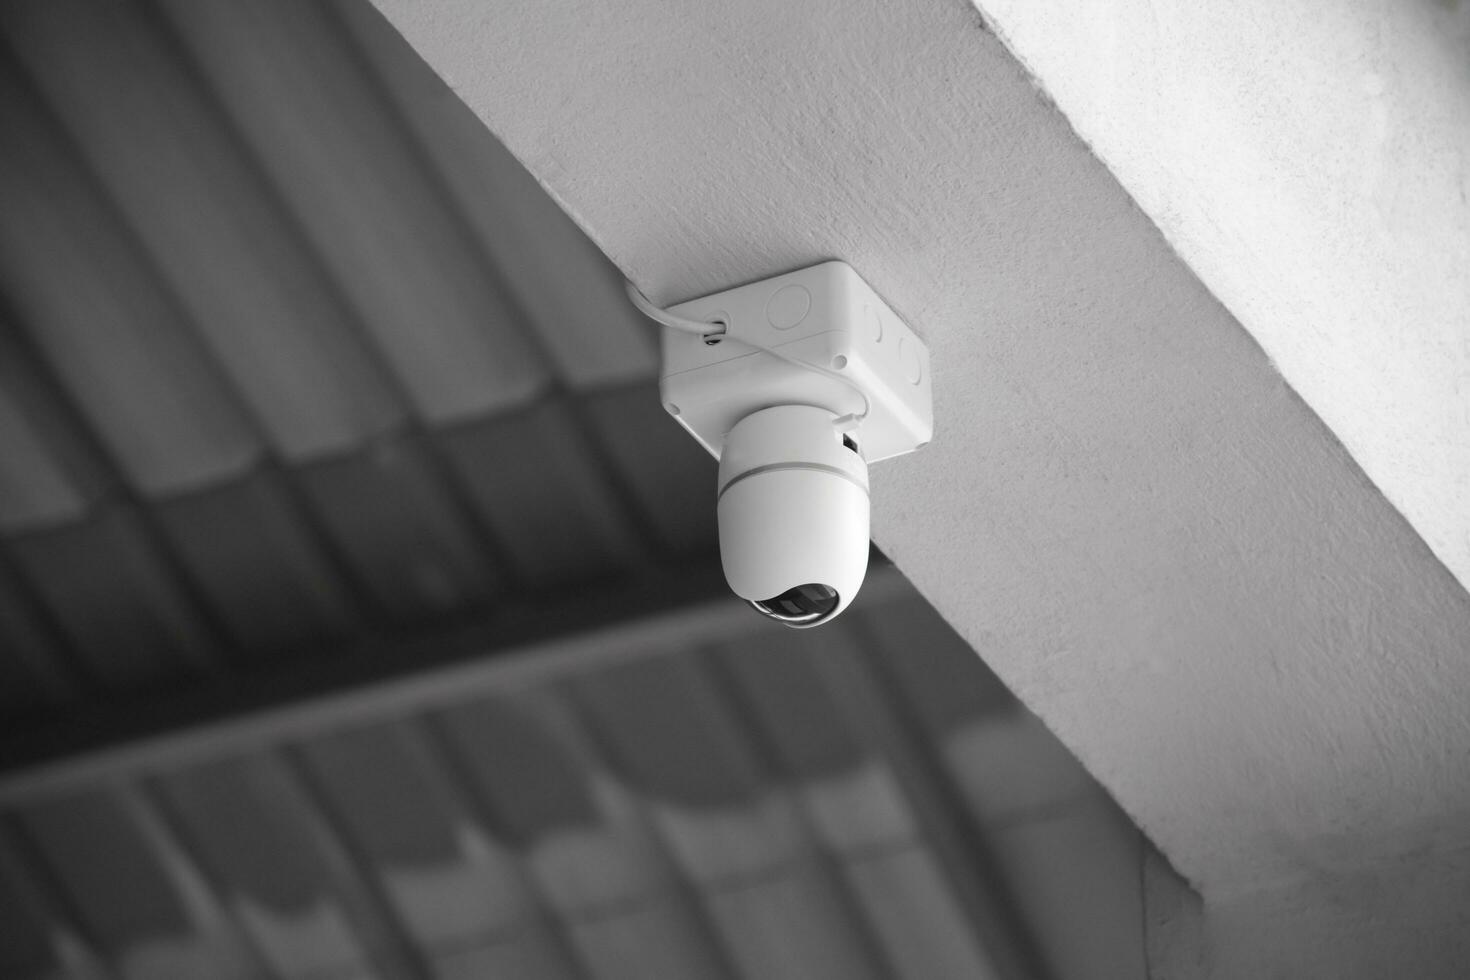 ip cctv Câmera instalado em Alto teto do a casa para Faz a segurança de monitoramento através Móvel telefone e computador para Salve  humano vida e propriedade, suave e seletivo foco. foto